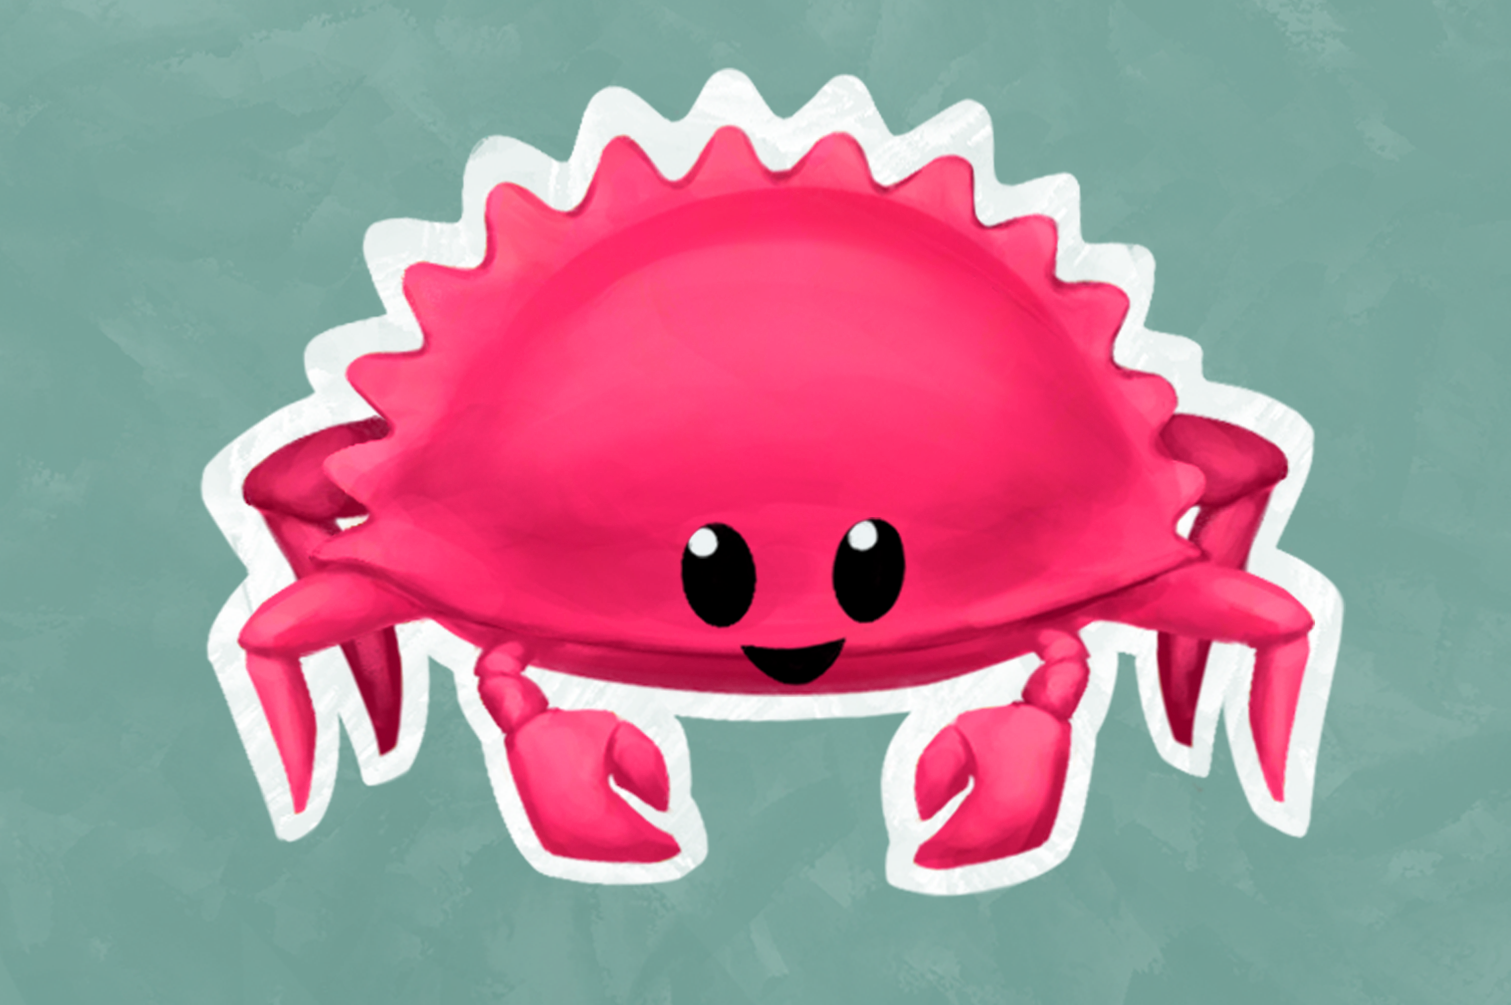 A cartoon crab